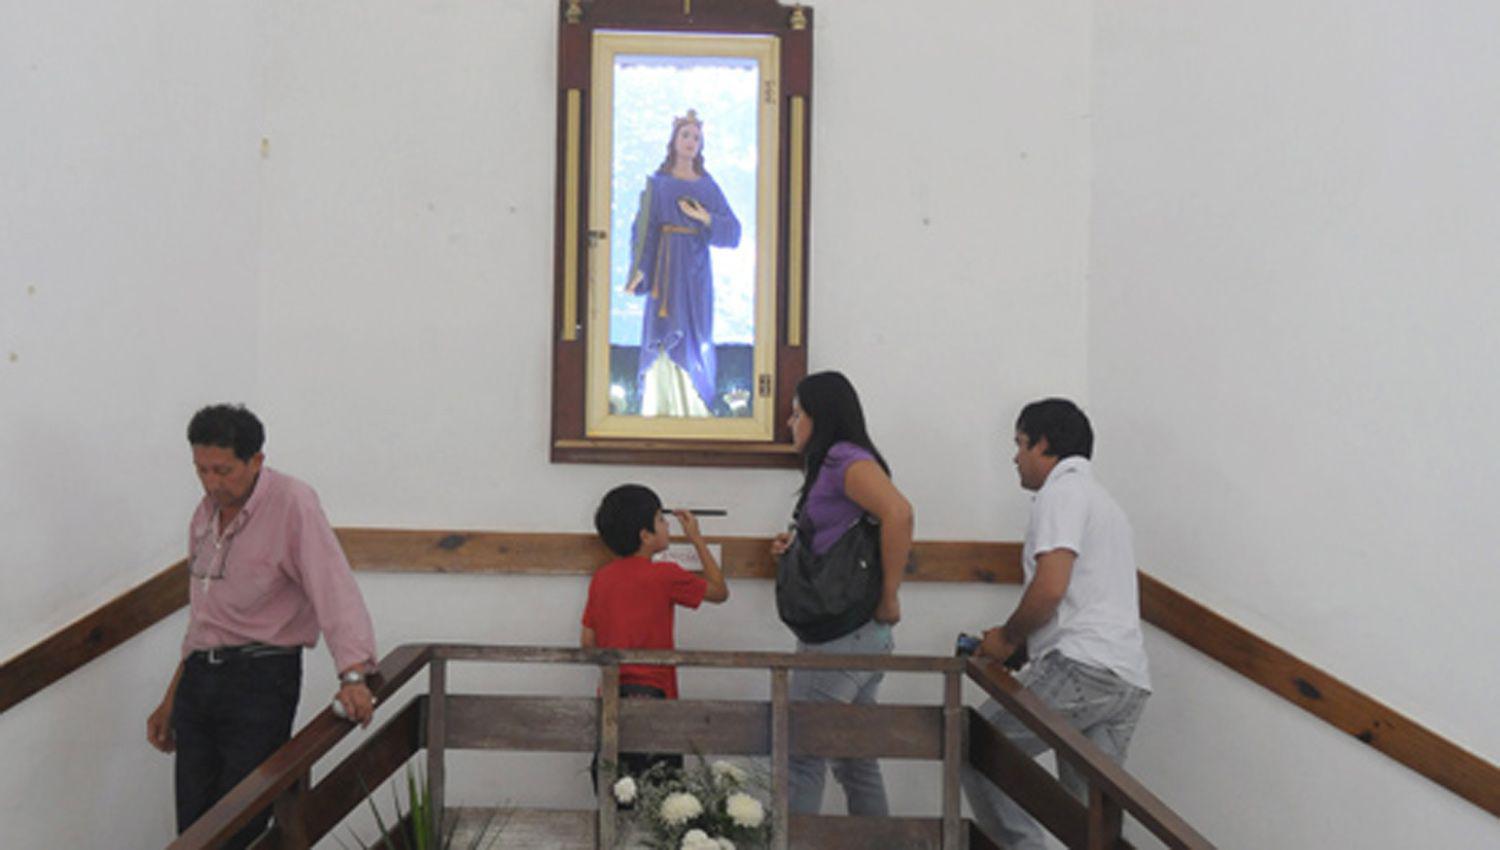 Hoy daraacute comienzo  el triduo patronal en  honor a Santa Luciacutea